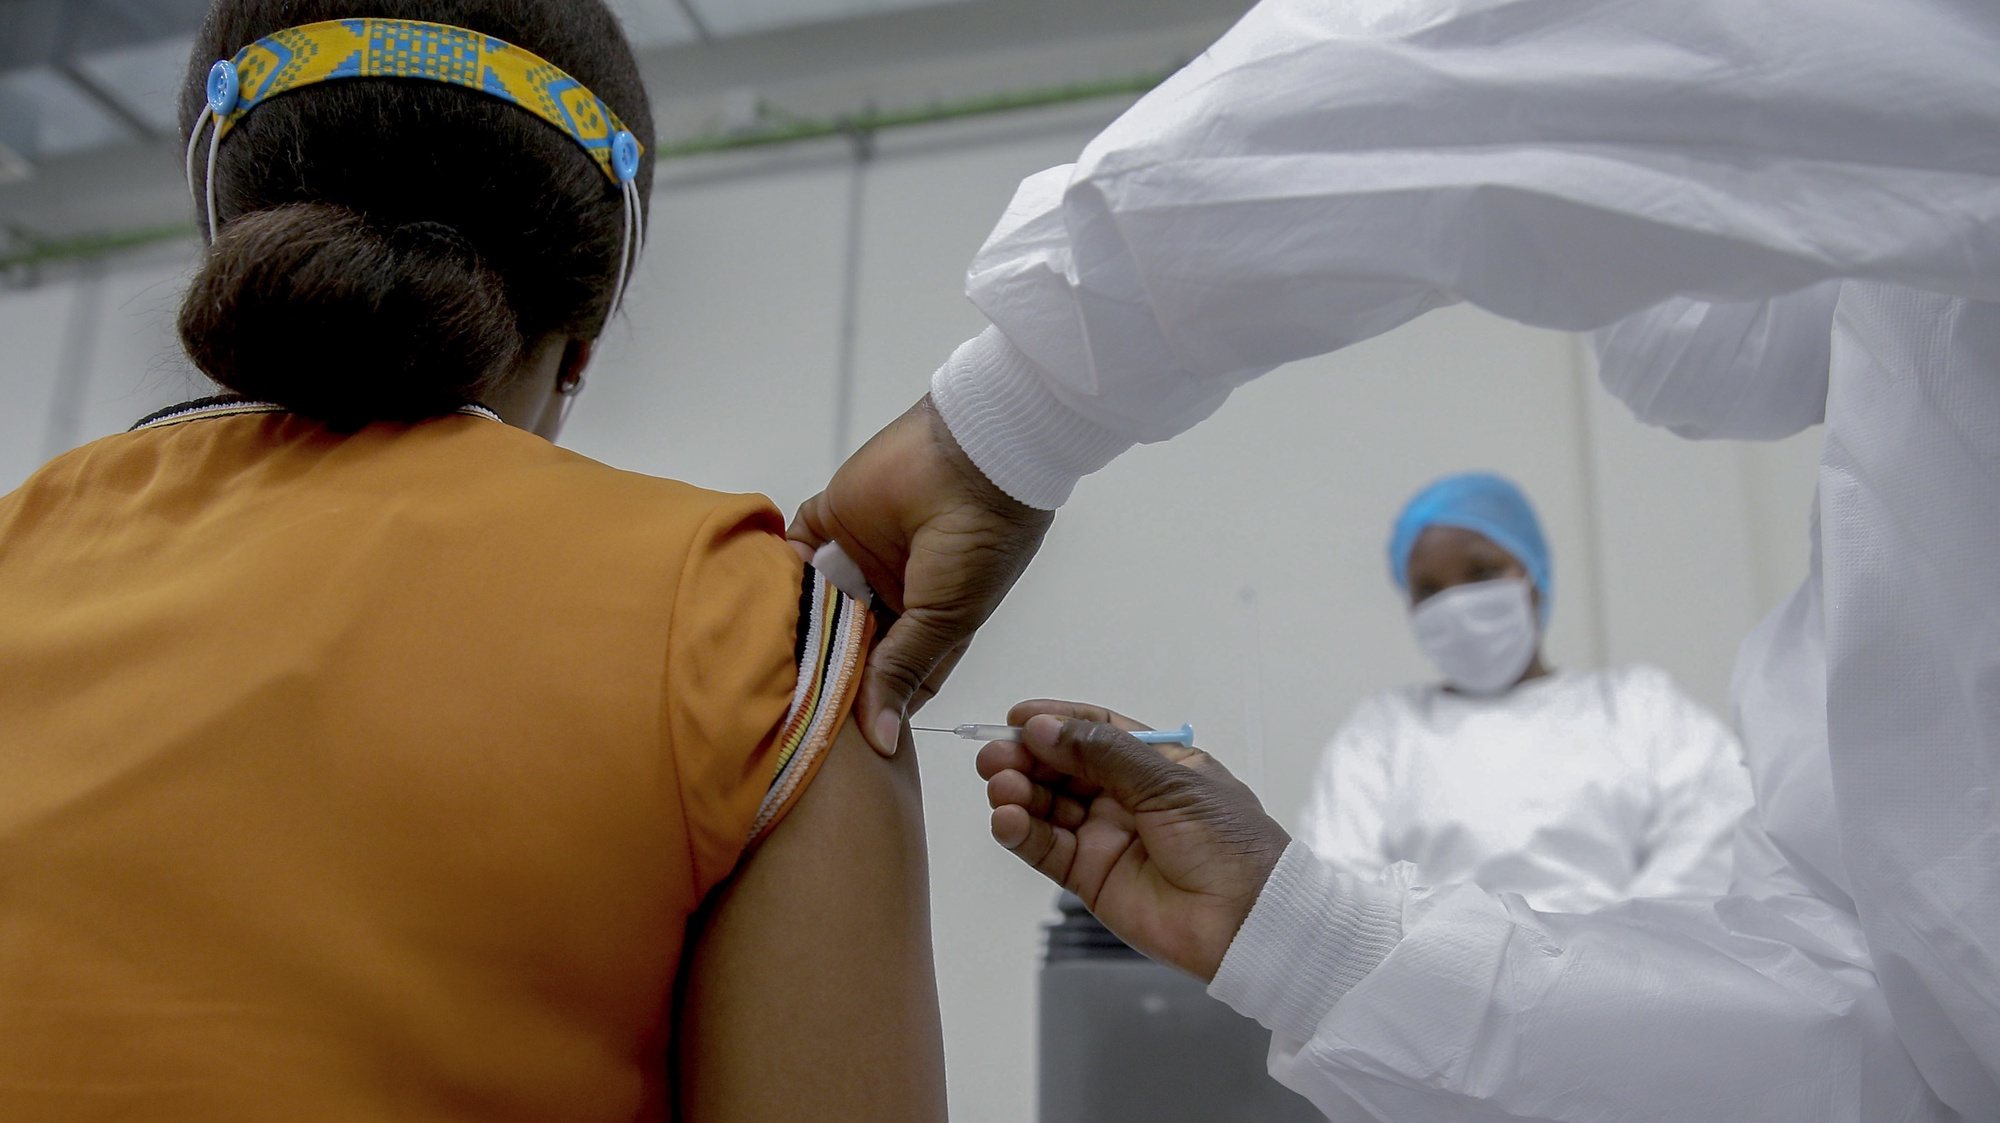 Uma mulher é vacinada na sala de vacinação do depósito central de vacinas de Angola, no dia em que chegaram ao país as primeiras 624.000 doses de vacinas contra a covid-19, no aeroporto Internacional 4 de Fevereiro, que contou com a presença da ministra da Saúde, Silvia Lutucuta (ausente da foto), no âmbito da iniciativa Covax, Luanda, Angola, 2 de março de 2021. AMPE ROGÉRIO/LUSA